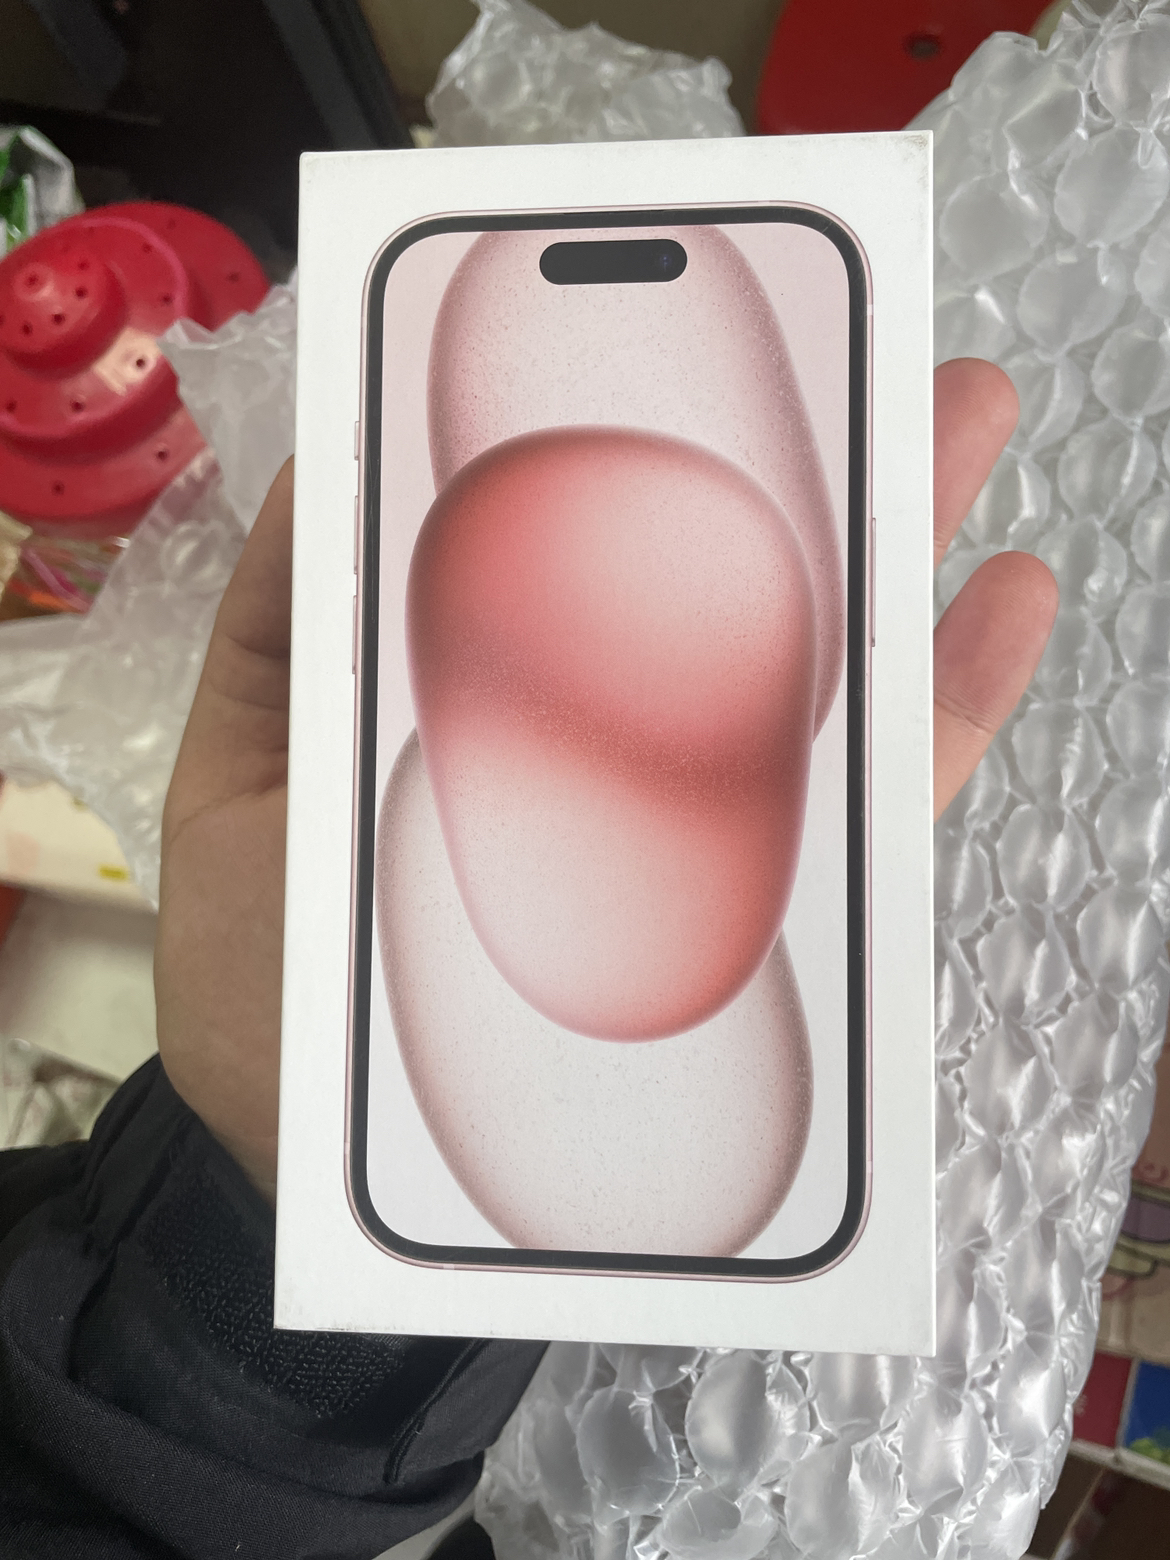 [壳膜套装]iPhone 15 128G 粉色 移动联通电信 手机 5G全网通手机晒单图